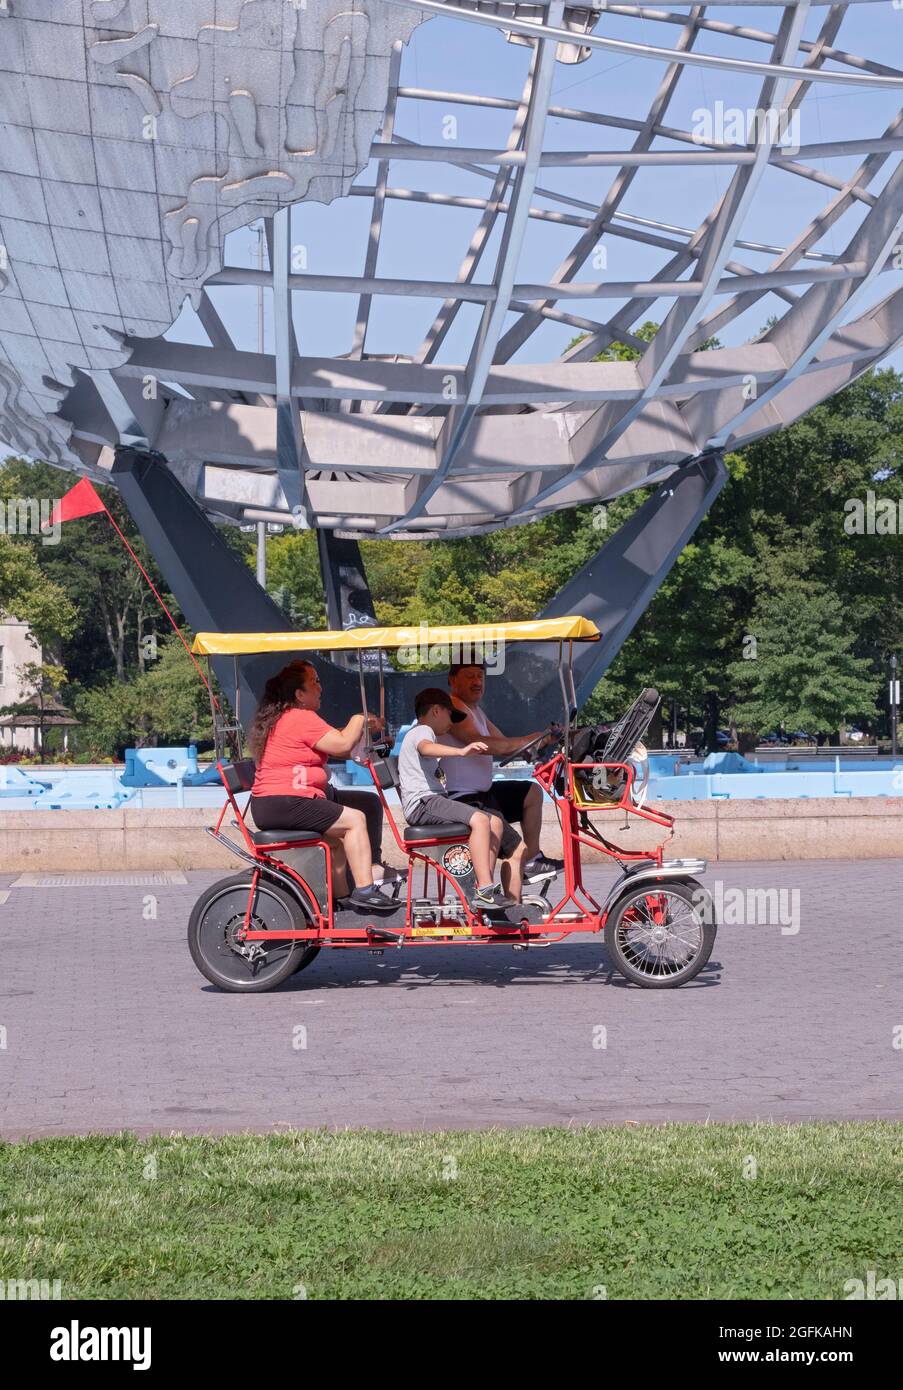 Une famille de quatre personnes fait le tour d'un vélo loué Wheel Fun 4 Wheel surrey, en passant par Unisphere dans le parc Corona de Flushing Meadows à Queens, New York. Banque D'Images